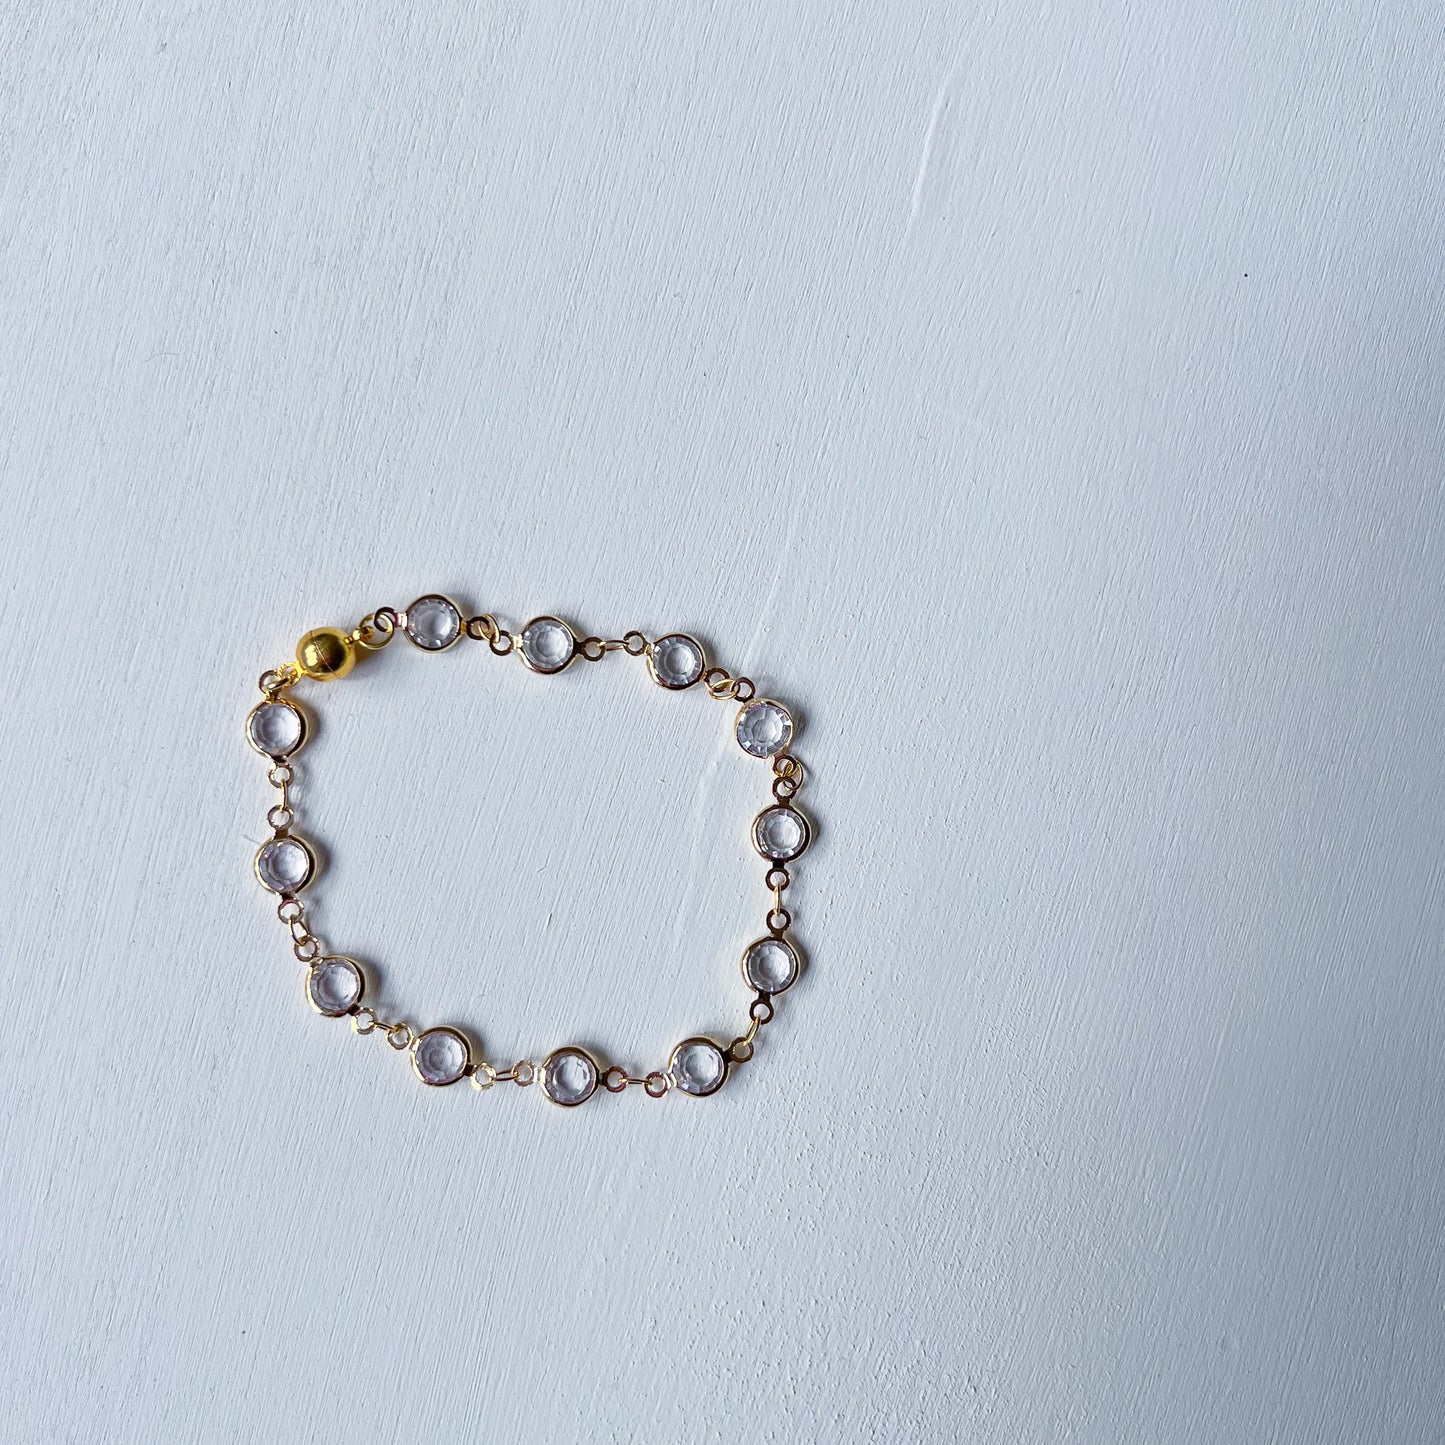 Gold glass bracelet